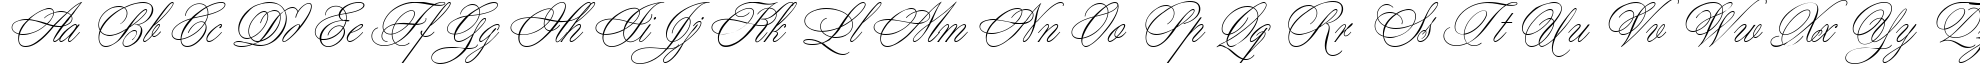 Пример написания английского алфавита шрифтом Margarita script